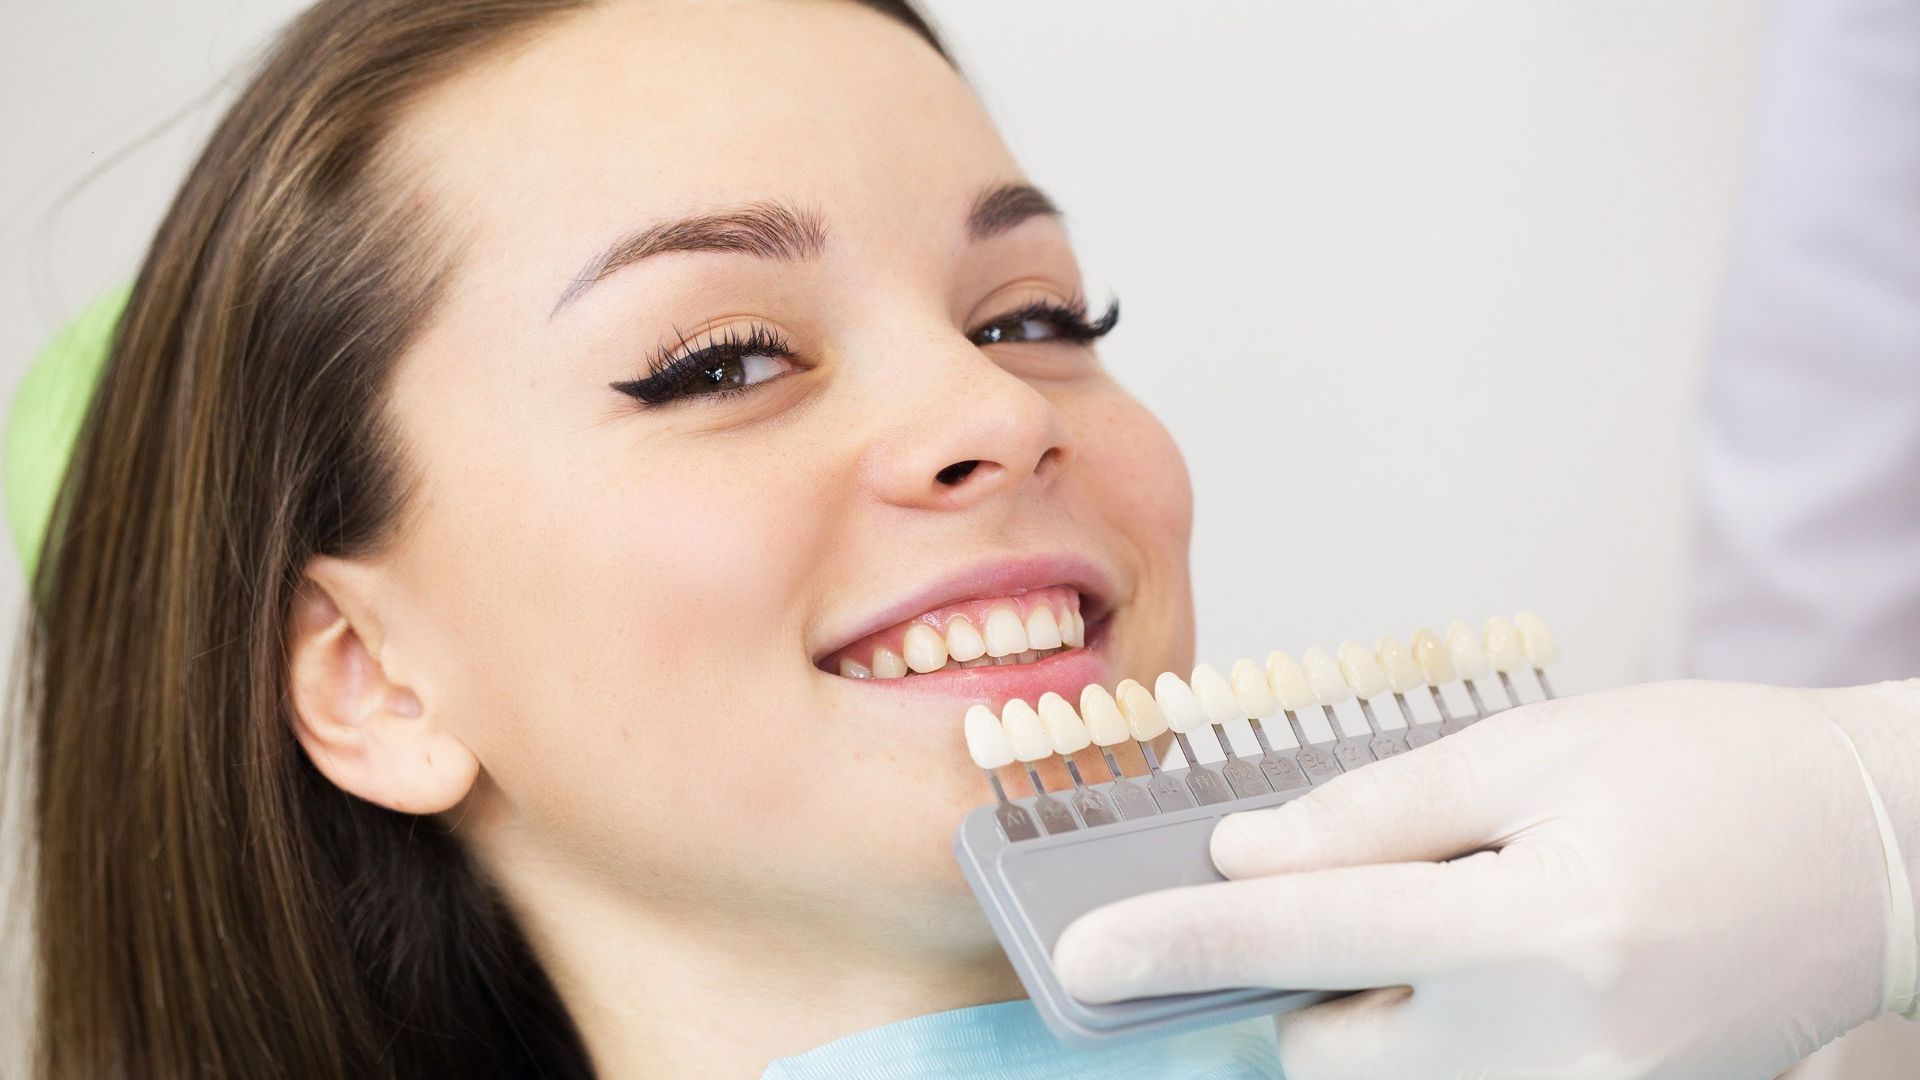 Les "facettes" dentaires, une pratique devenue virale qui n'est pas sans risque.